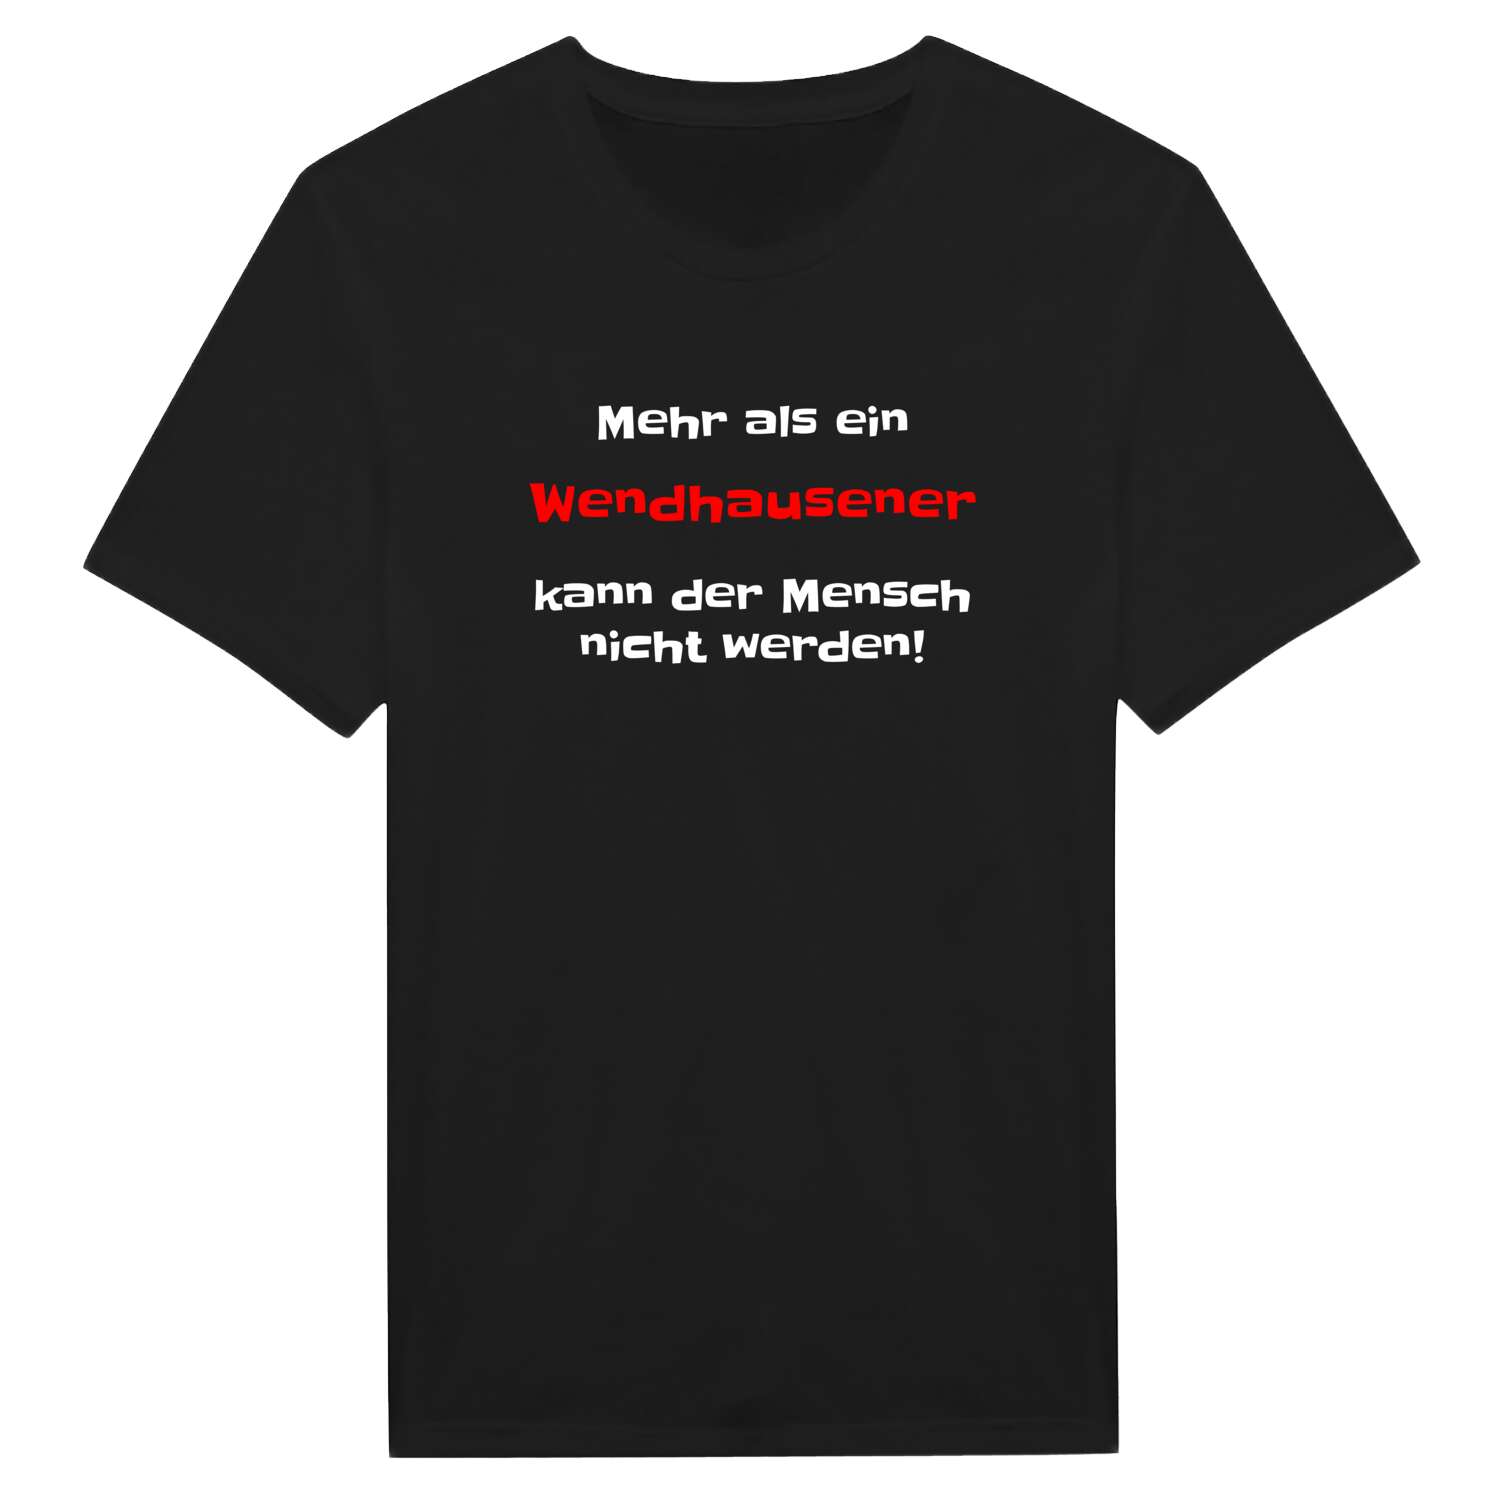 Wendhausen T-Shirt »Mehr als ein«